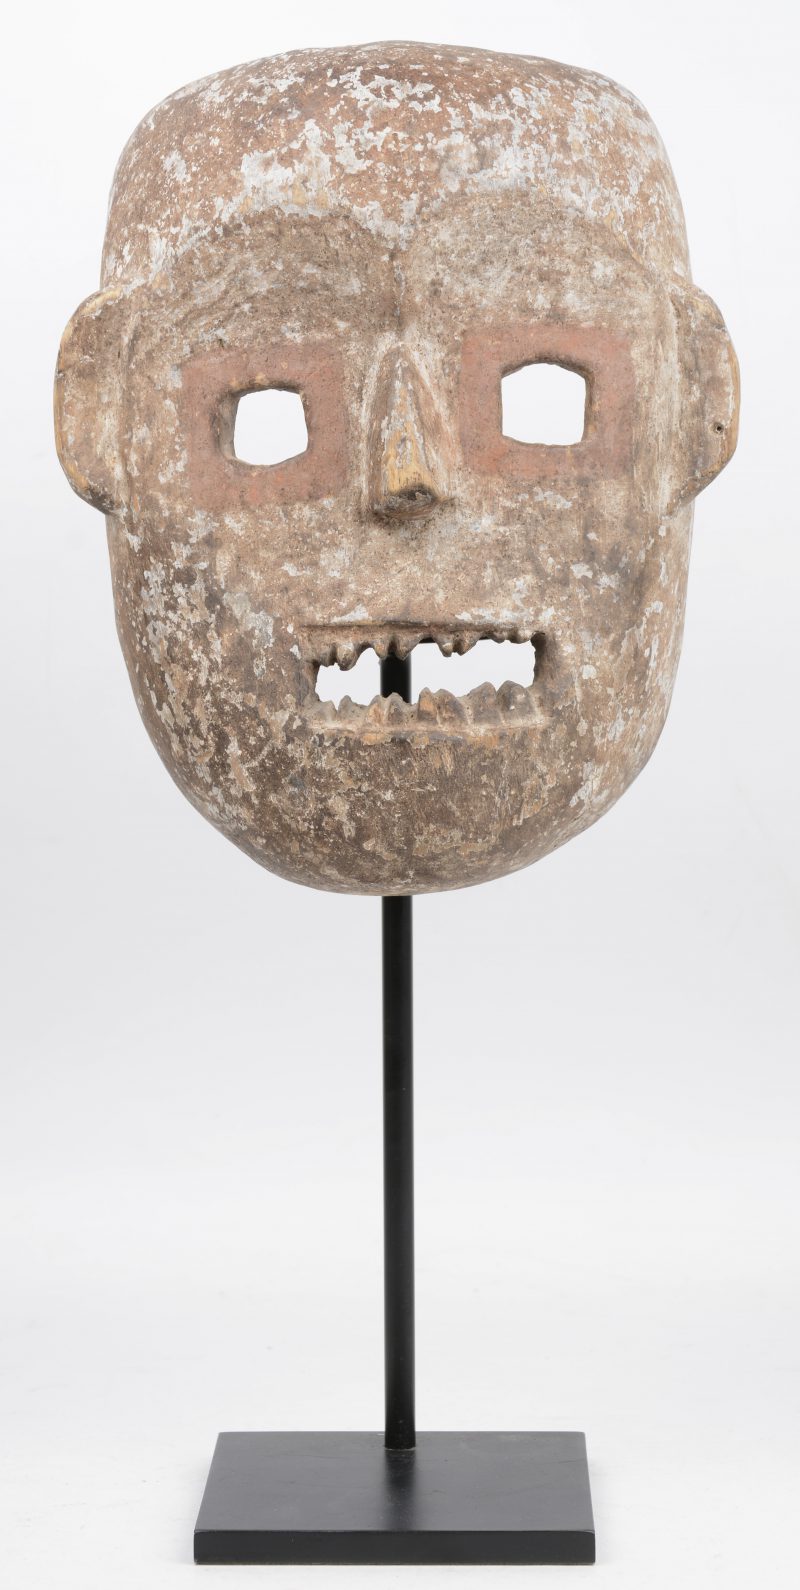 Ceremonieel masker uit Noord-Oost Congo. Op metalen staander.